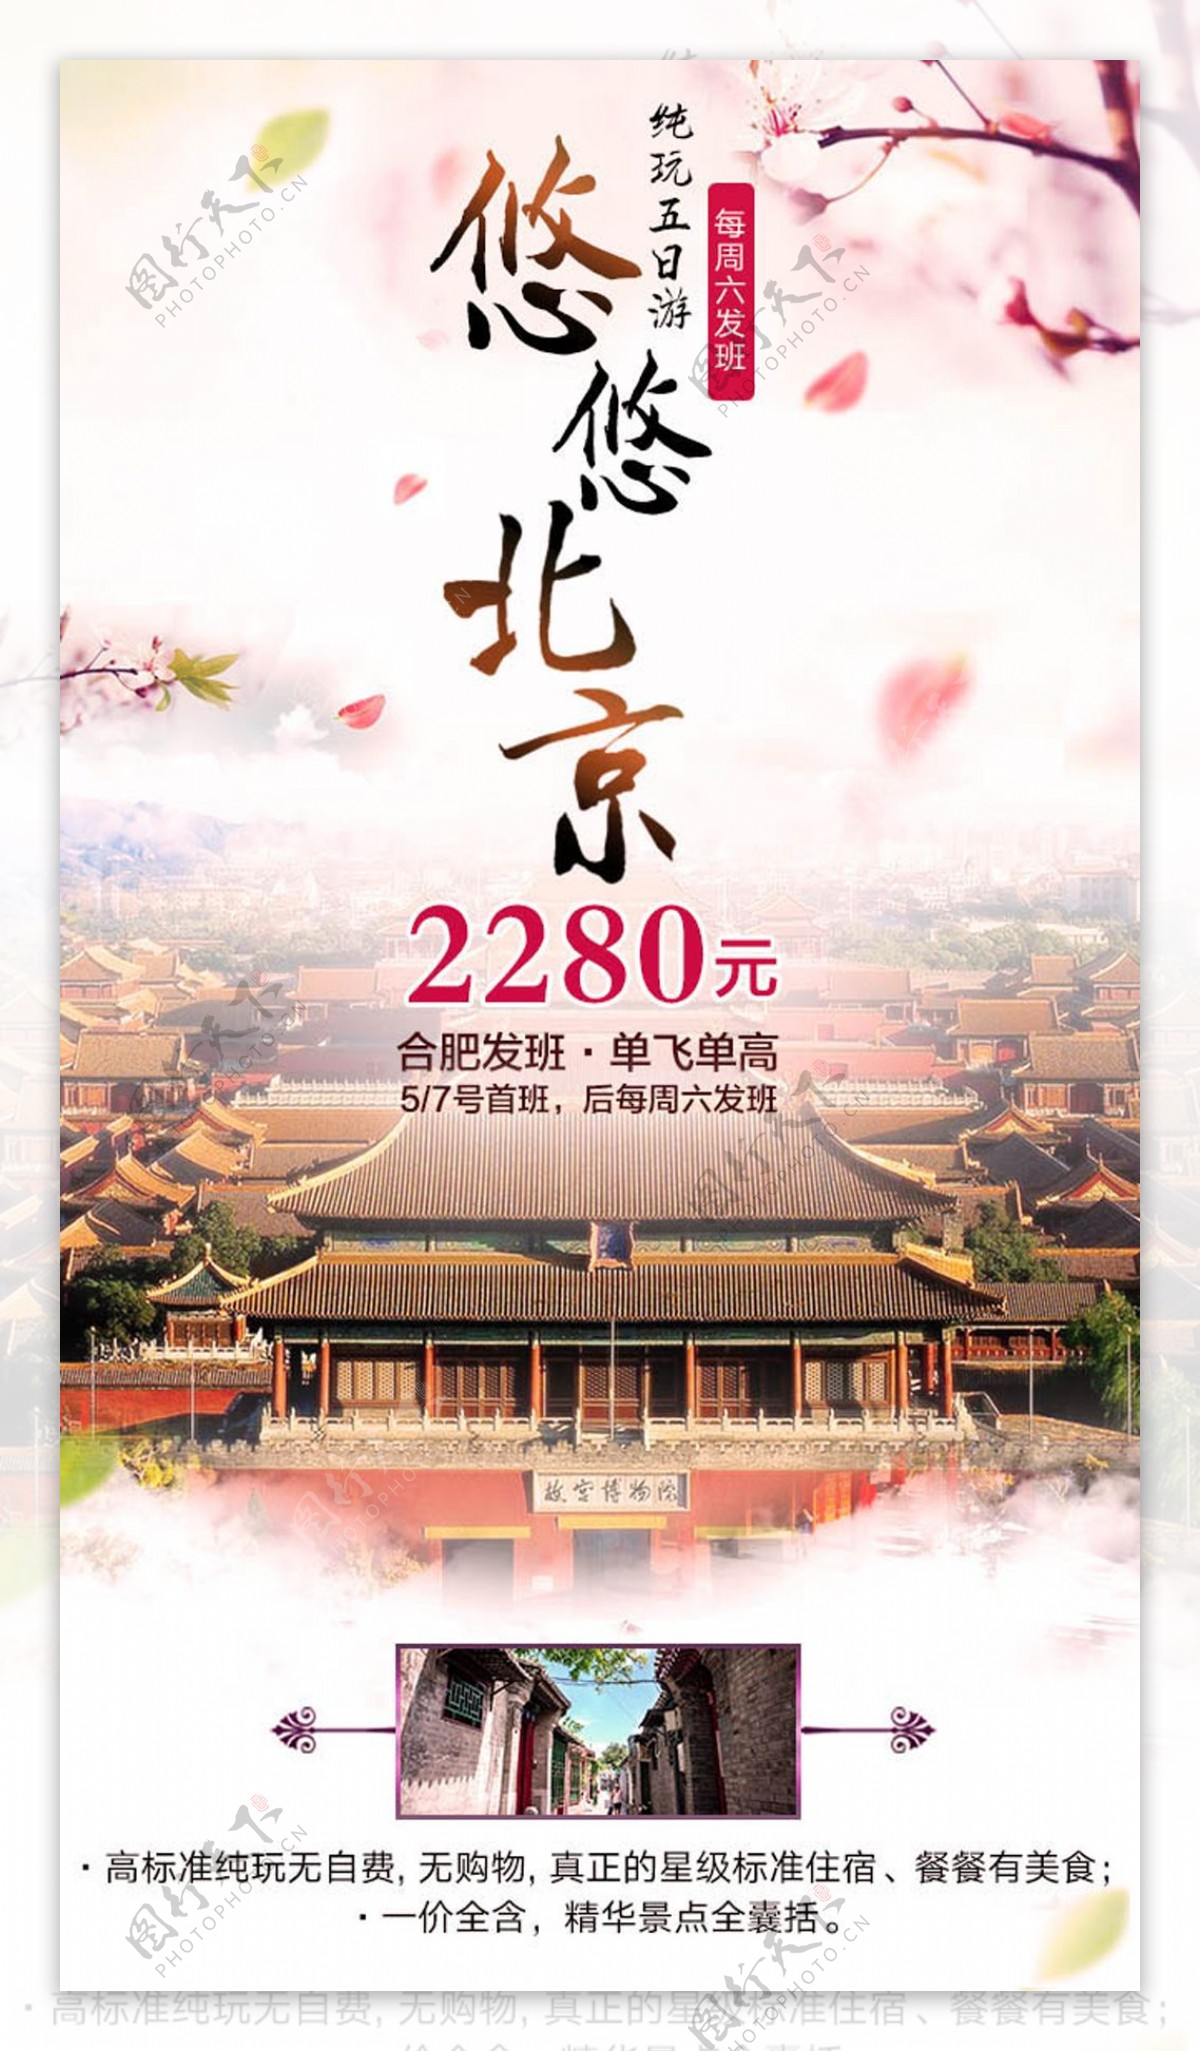 悠悠北京旅游宣传海报设计